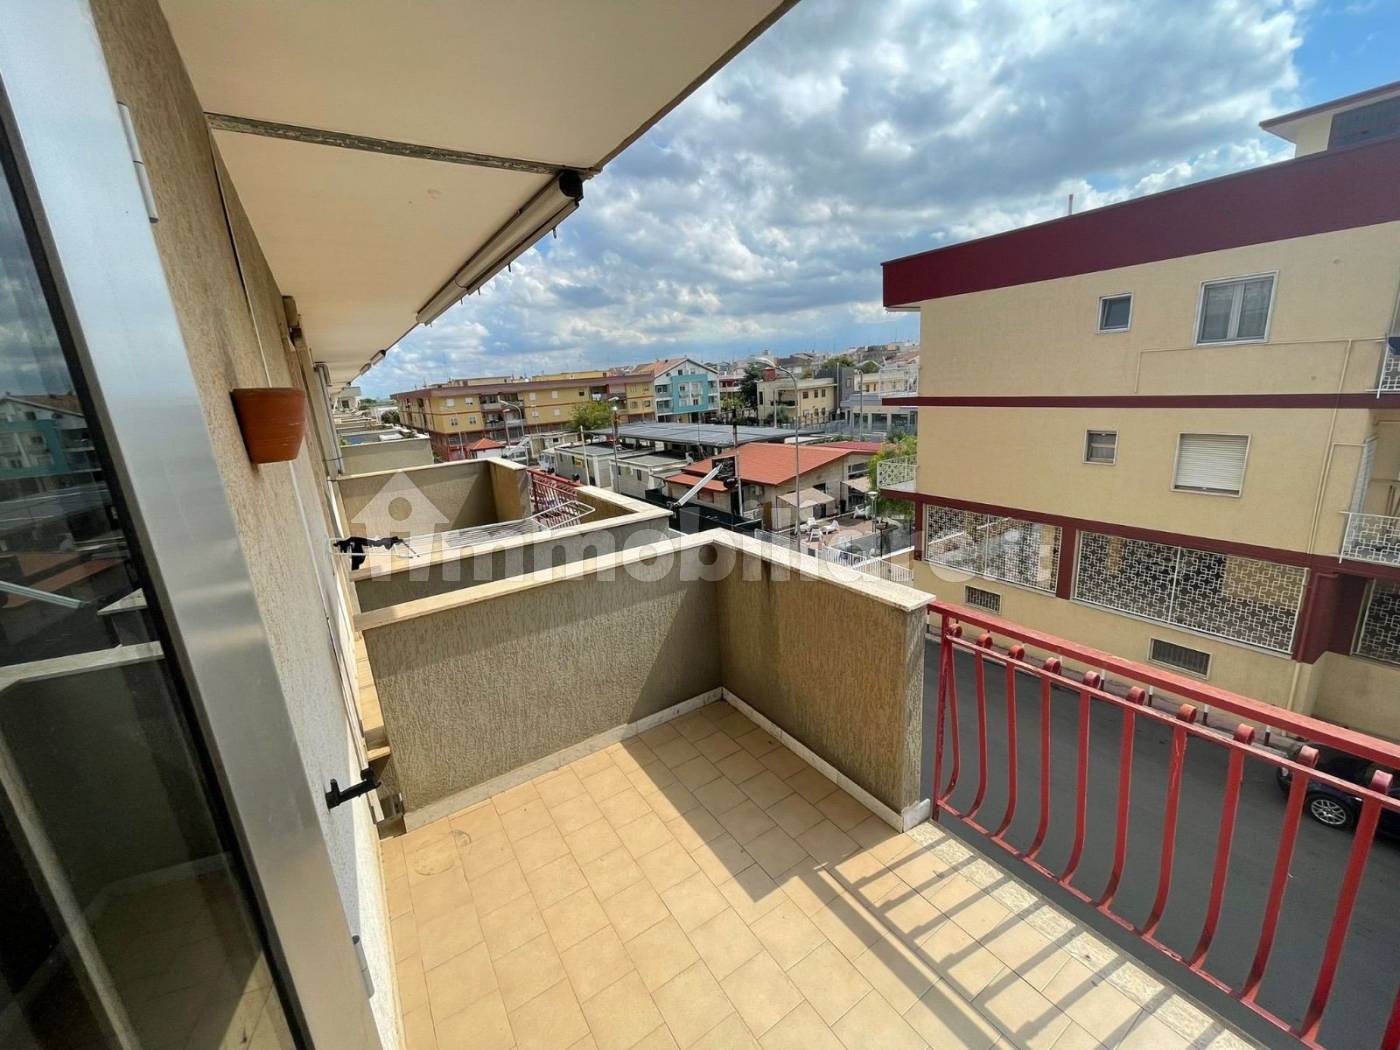 Affitto Appartamento Sannicandro di Bari. Trilocale in via Generale  Costantino Mondelli 58. Ottimo stato, secondo piano, posto auto, con  balcone, riscaldamento autonomo, rif. 106628671